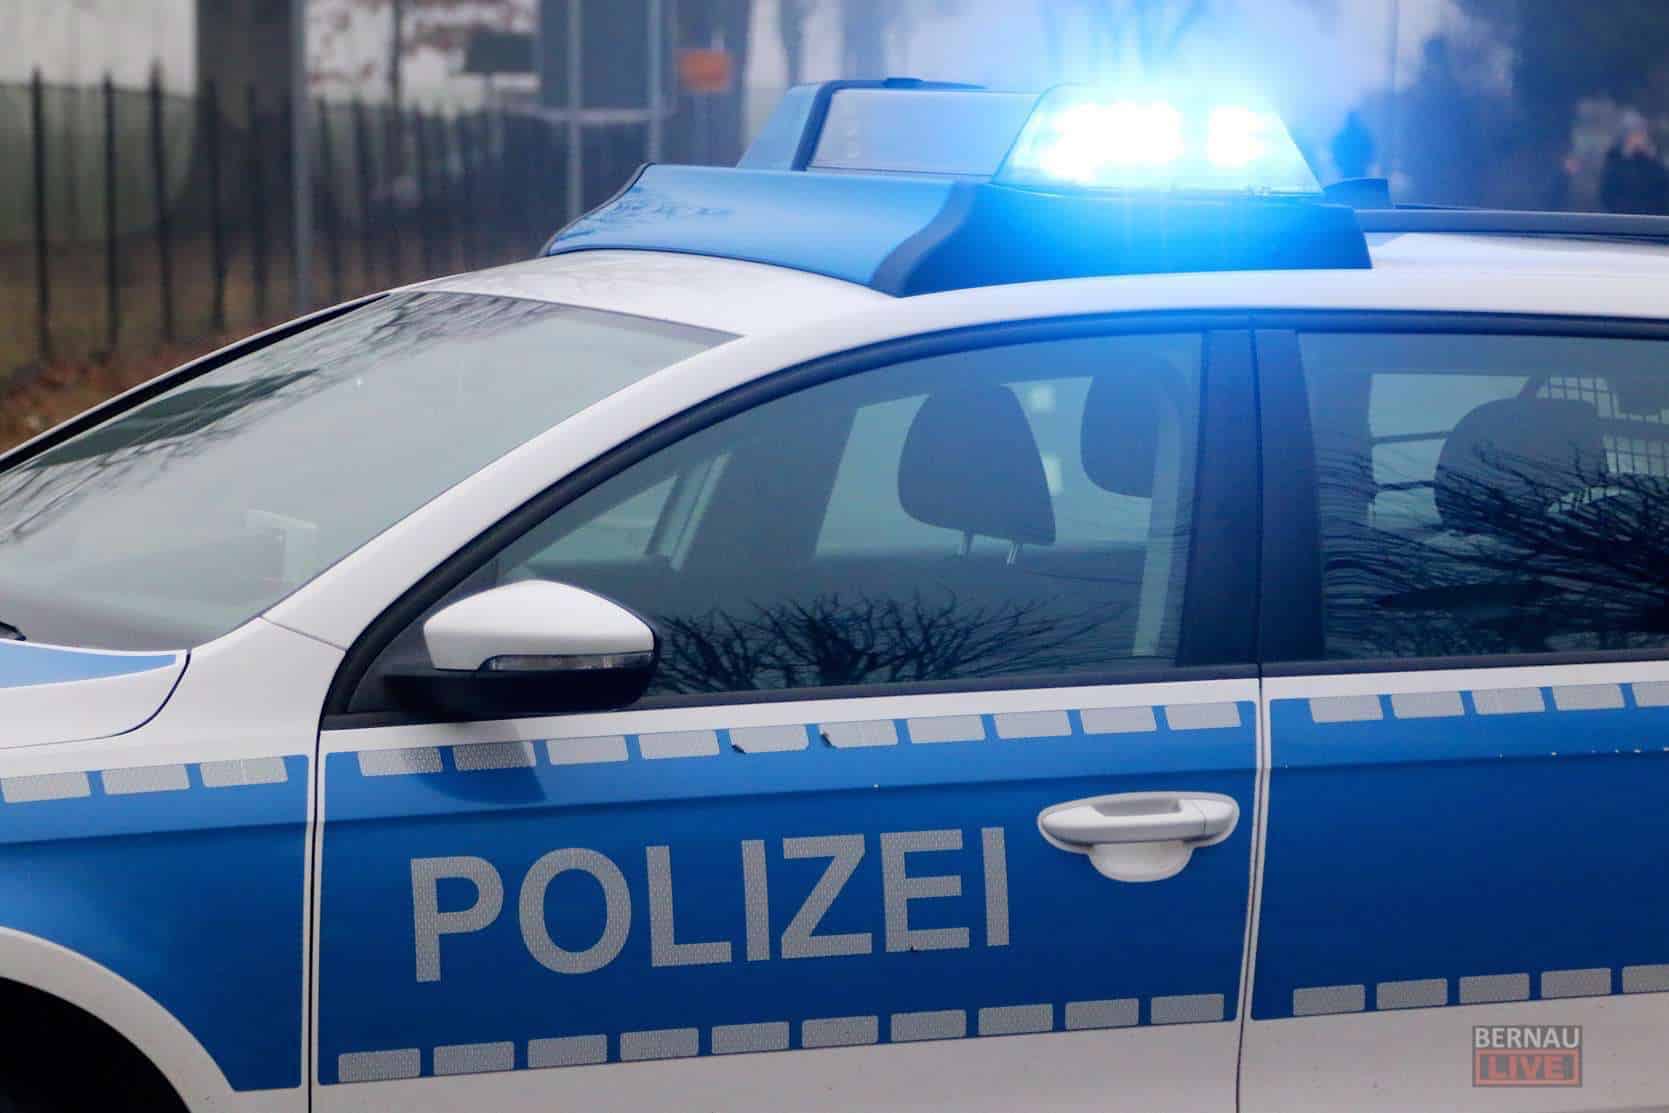 Radfahrerin in Bernau angefahren - Polizei sucht PKW und Zeugen